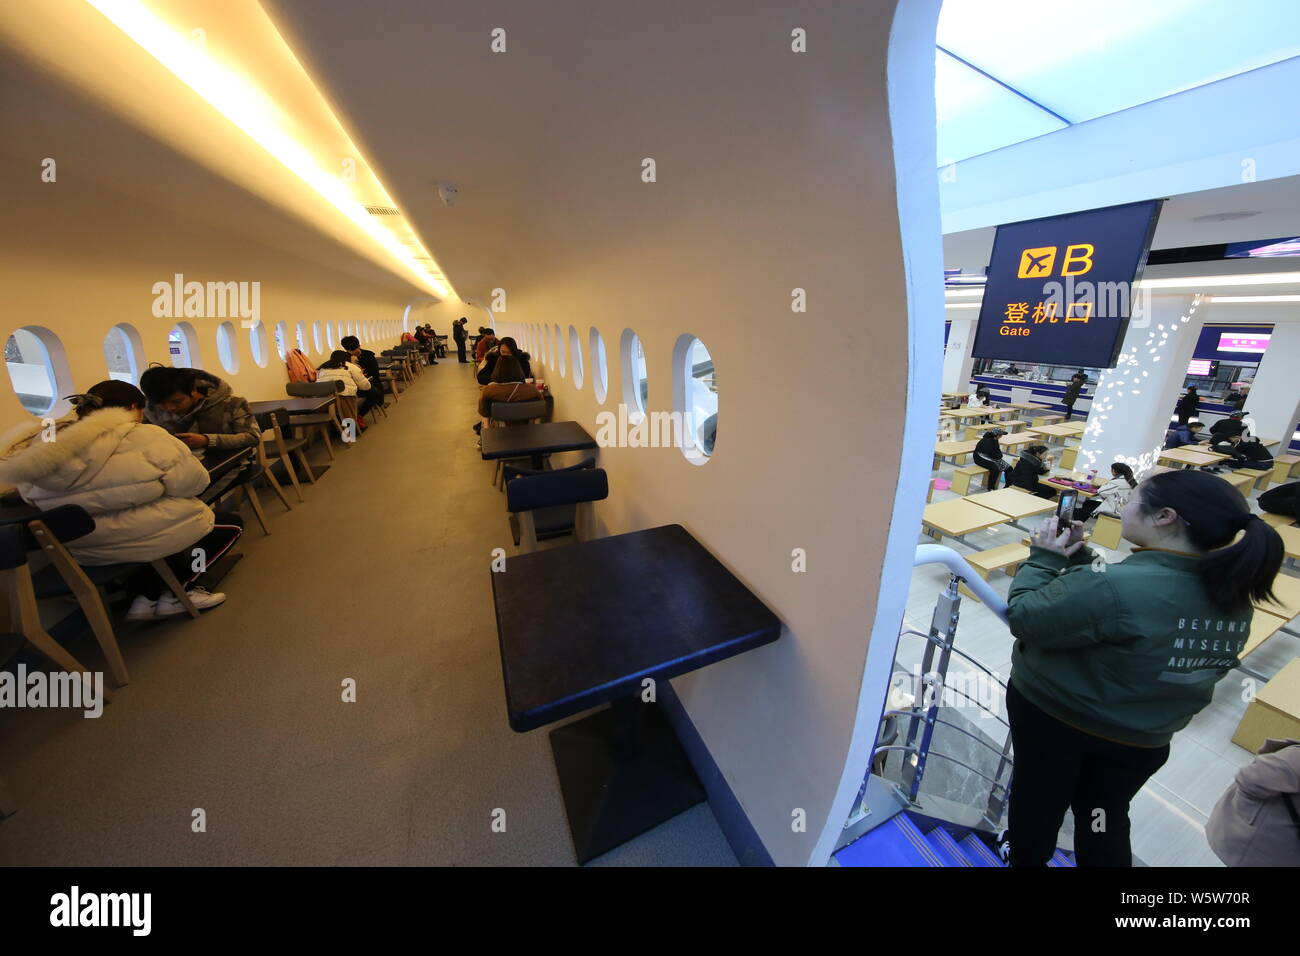 Gli studenti cenare presso un'aviazione mensa a tema decorate con un full-size mock-up del C919 jet del passeggero a Zhengzhou università di aeronautica in Foto Stock